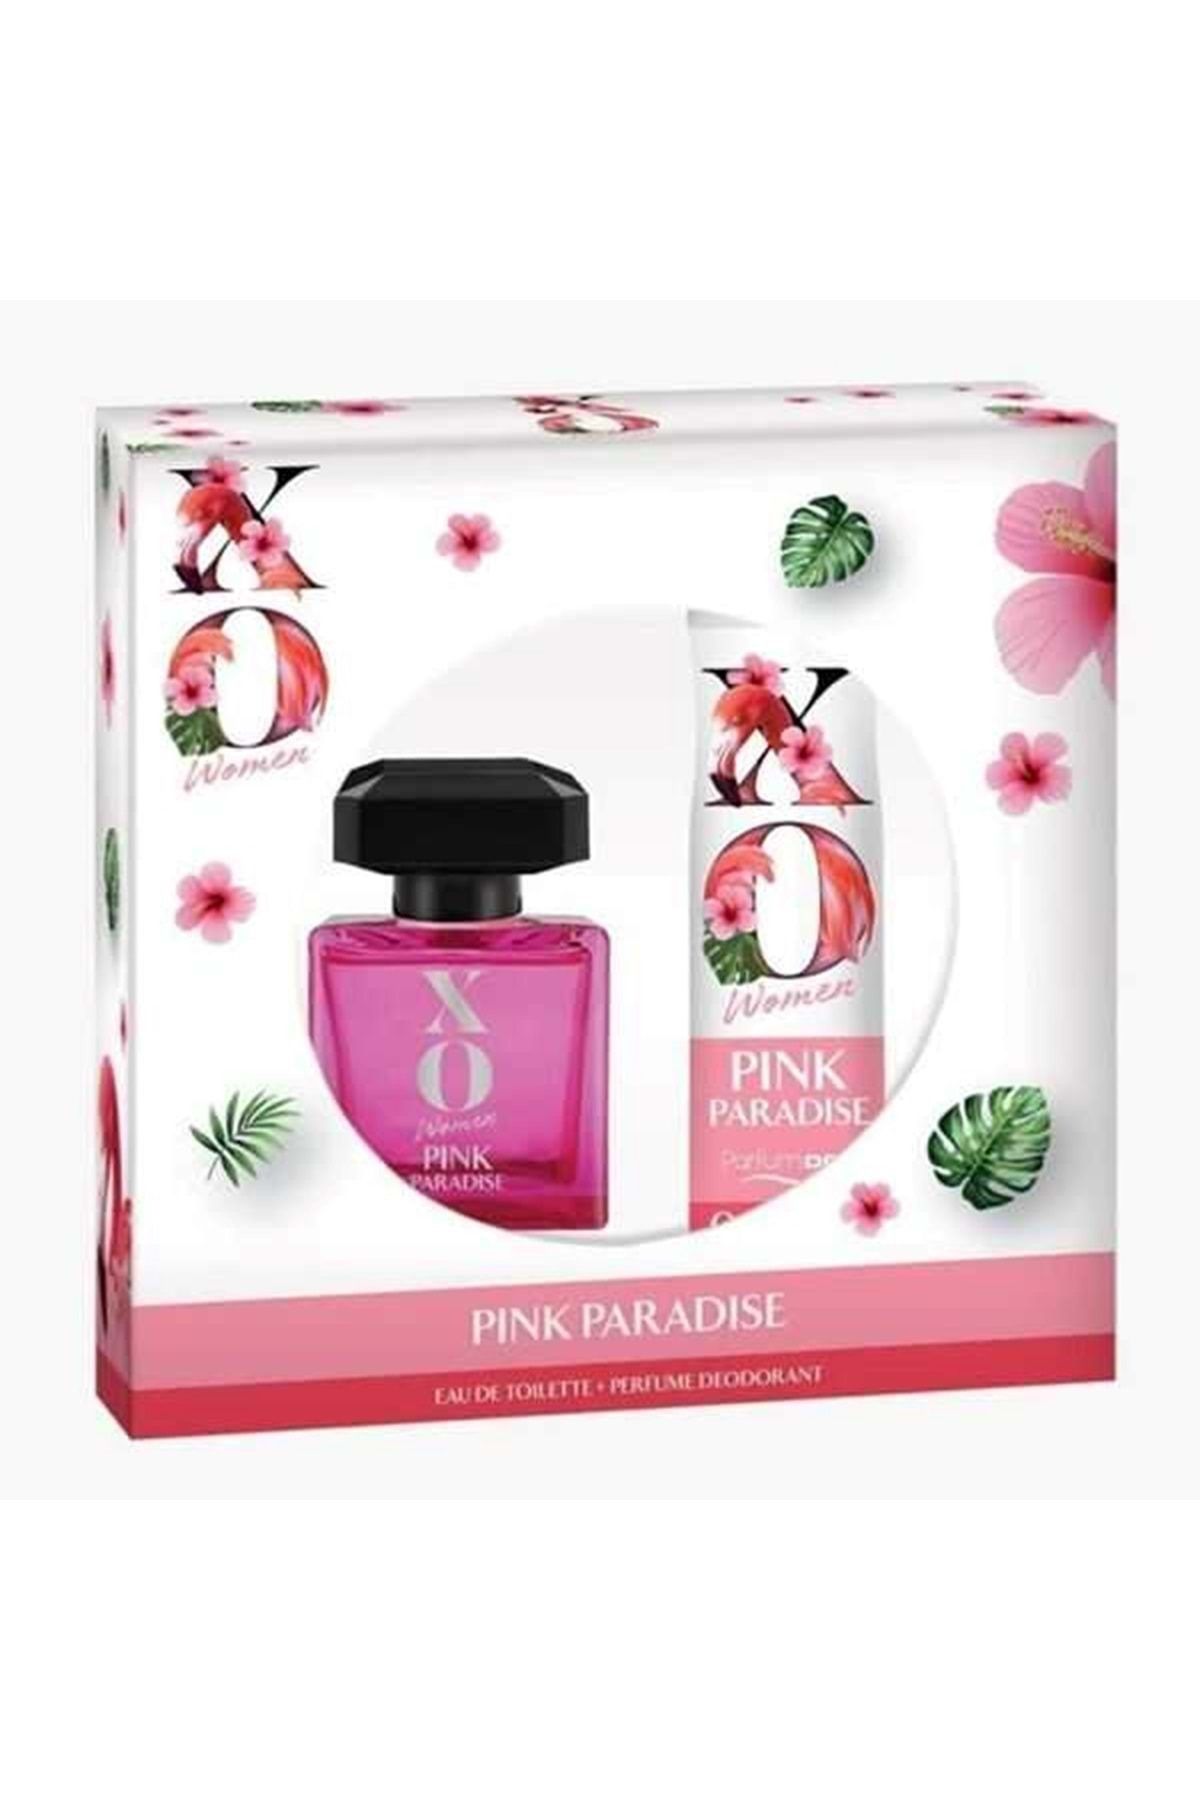 Xo Women Pink Paradise Kadın Parfüm Edt 100 ml Deodorant 125 ml Set